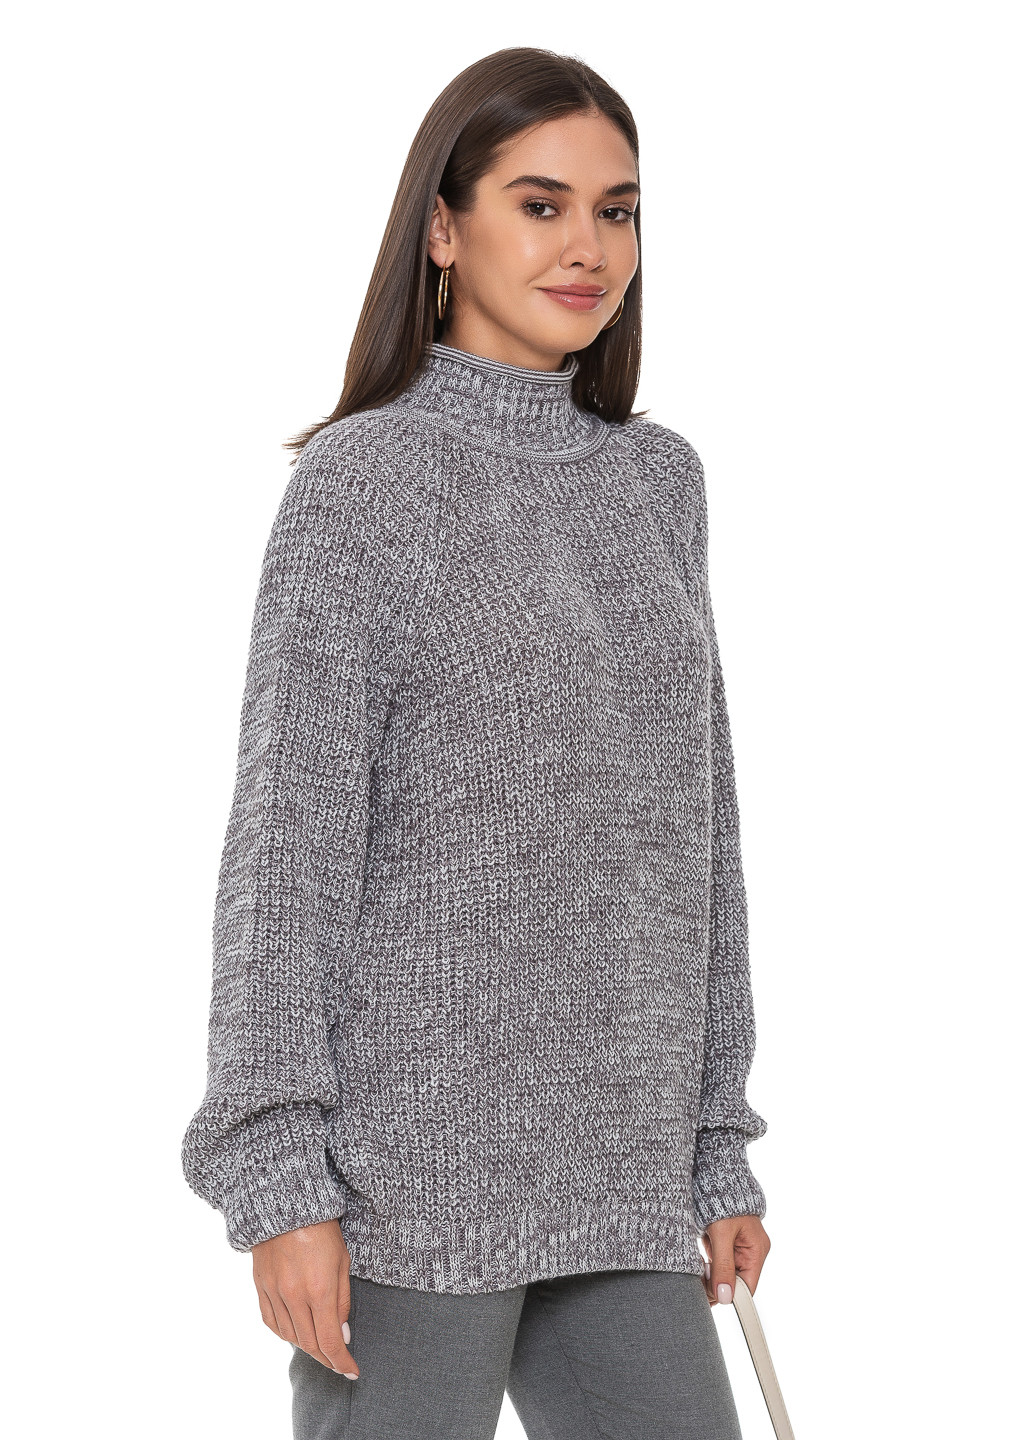 Серый меланжевый свитер крупной вязки. SVTR